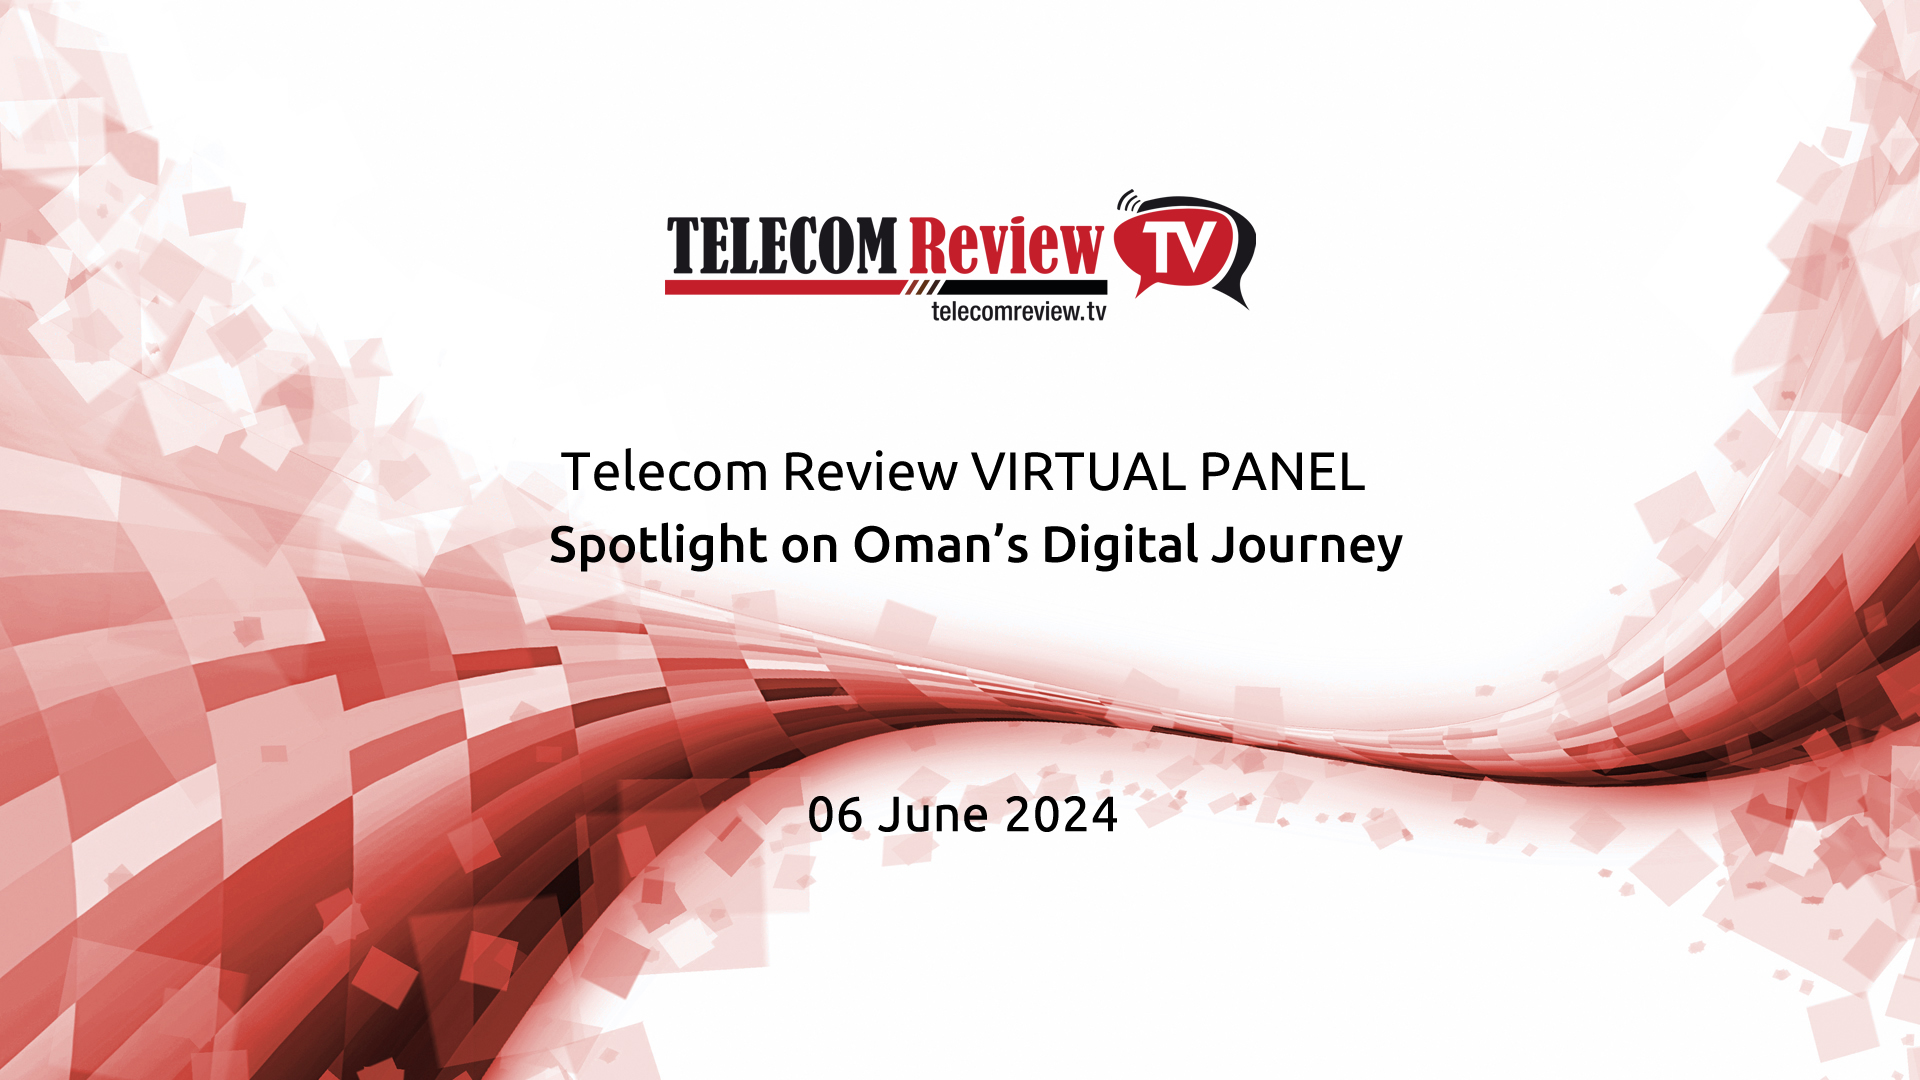 Highlights: Exploring Oman’s Digital Journey